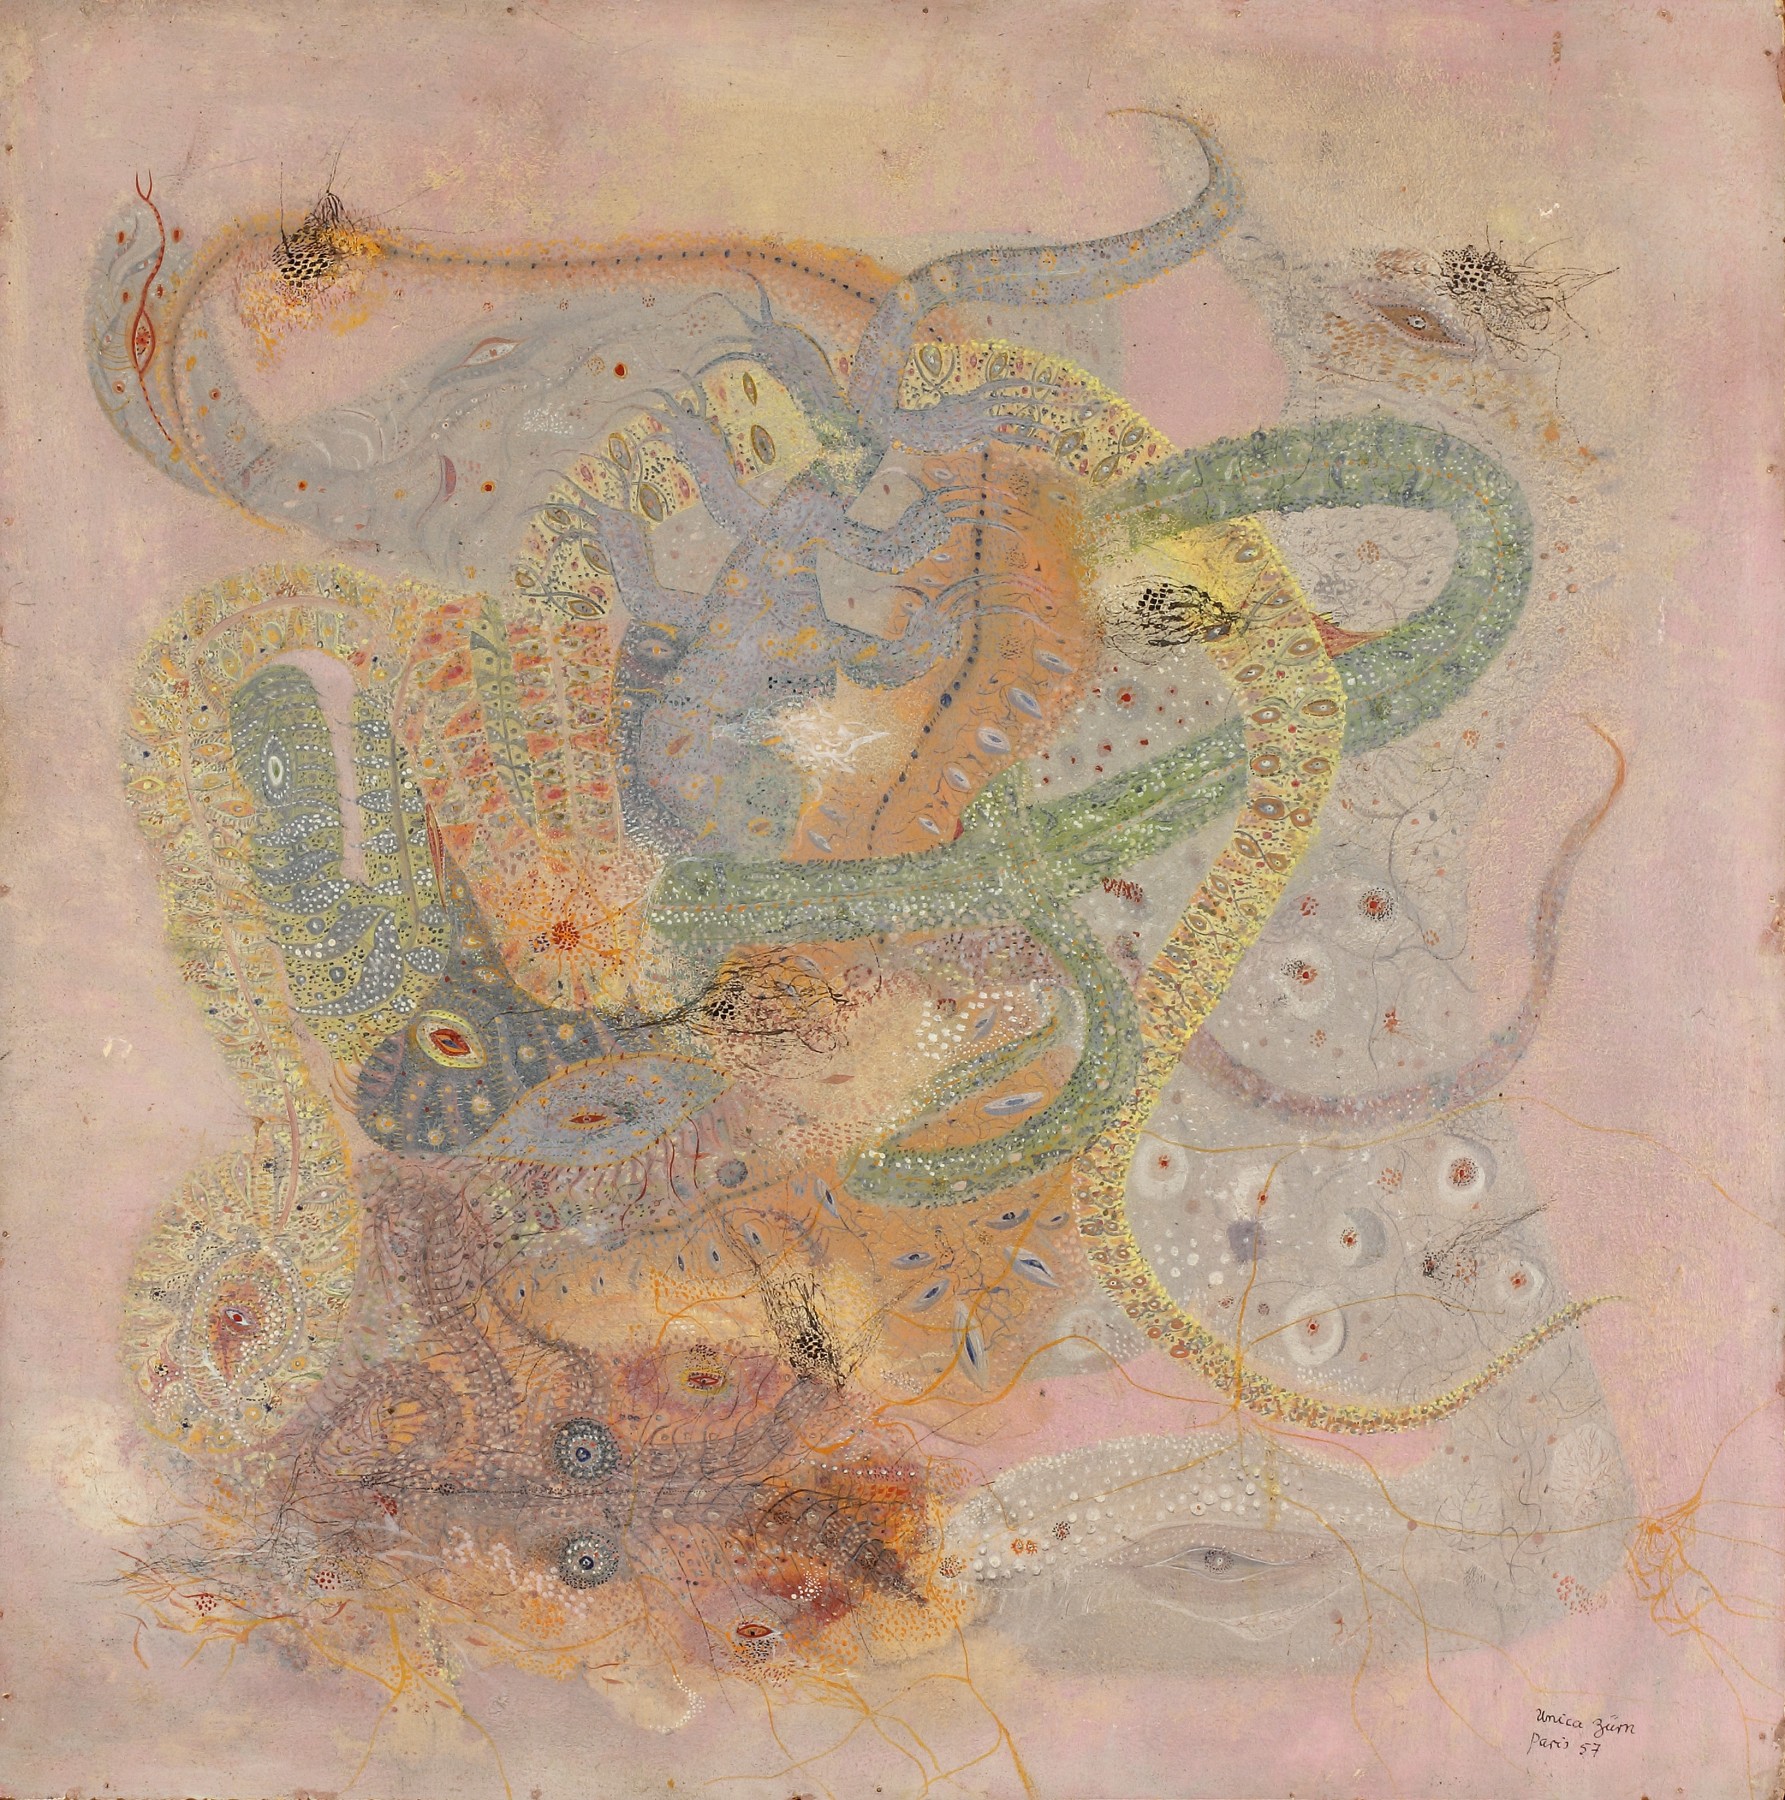 Unica Zürn&nbsp;(1916-1970) Allemagne/France, La Serpenta (Le serpent), 1957, Huile sur paneaux&nbsp;49.5 x 49.5 in